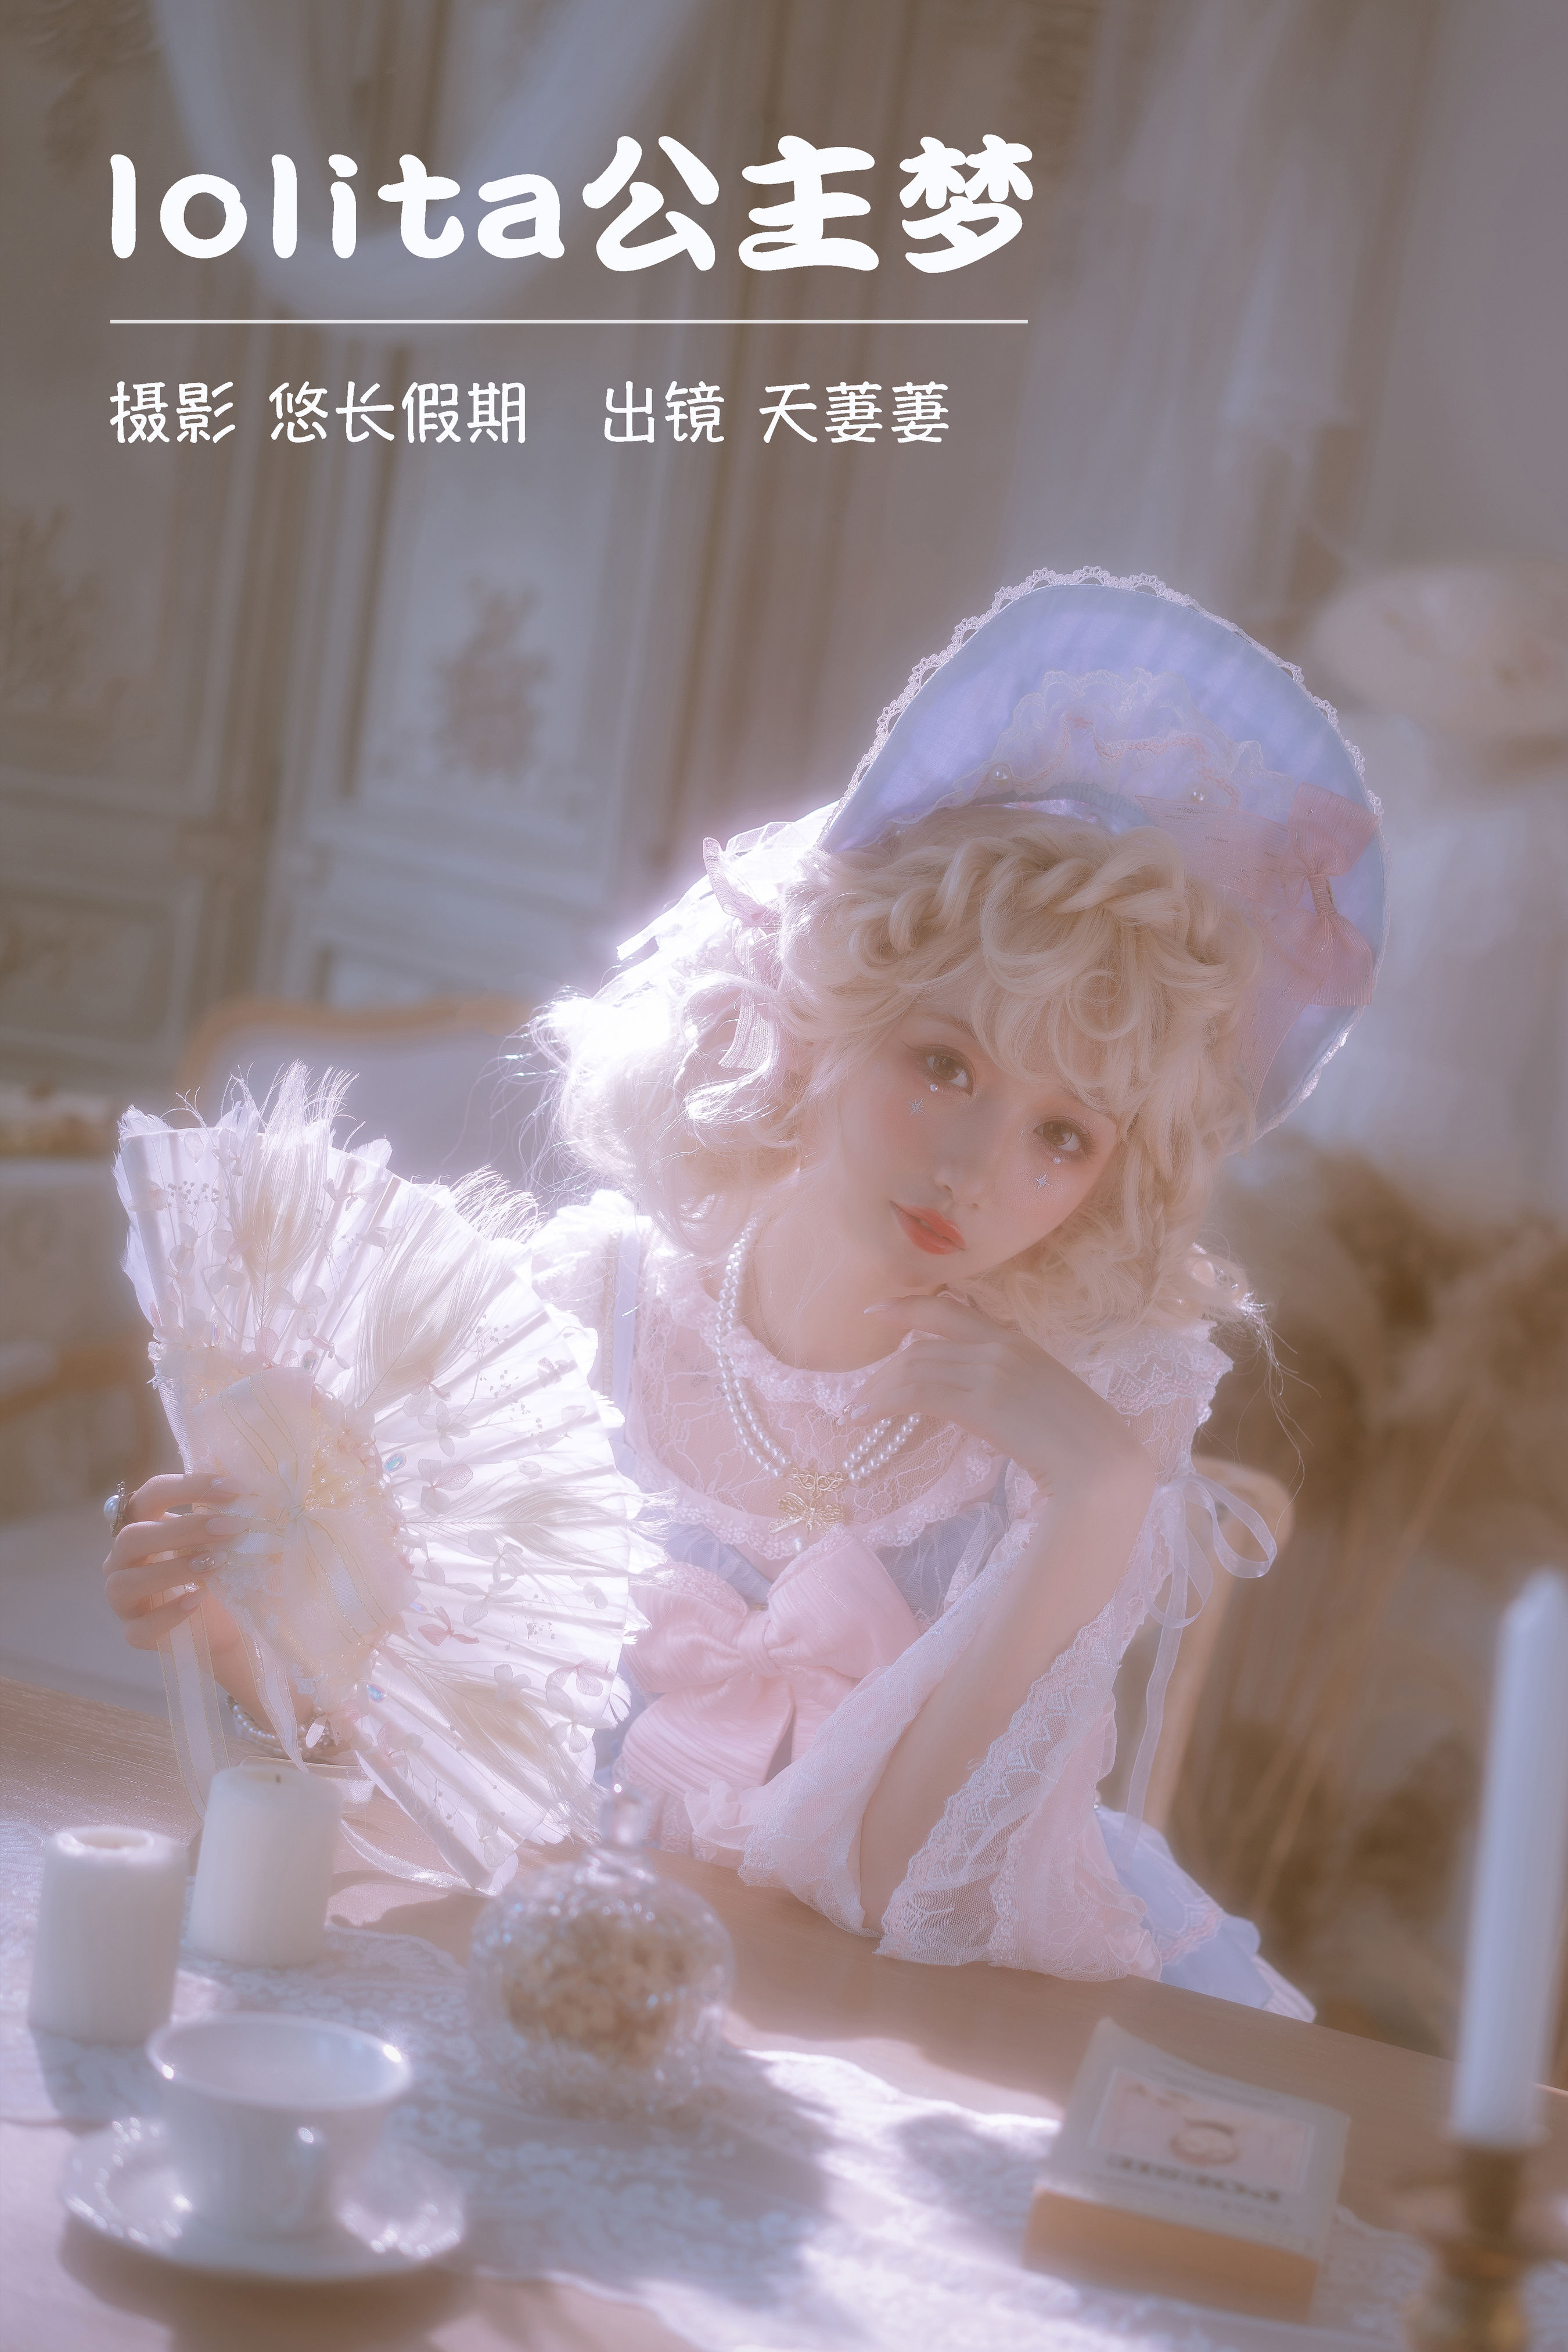 悠长假期_天萋萋《lolita公主梦》美图作品图片1